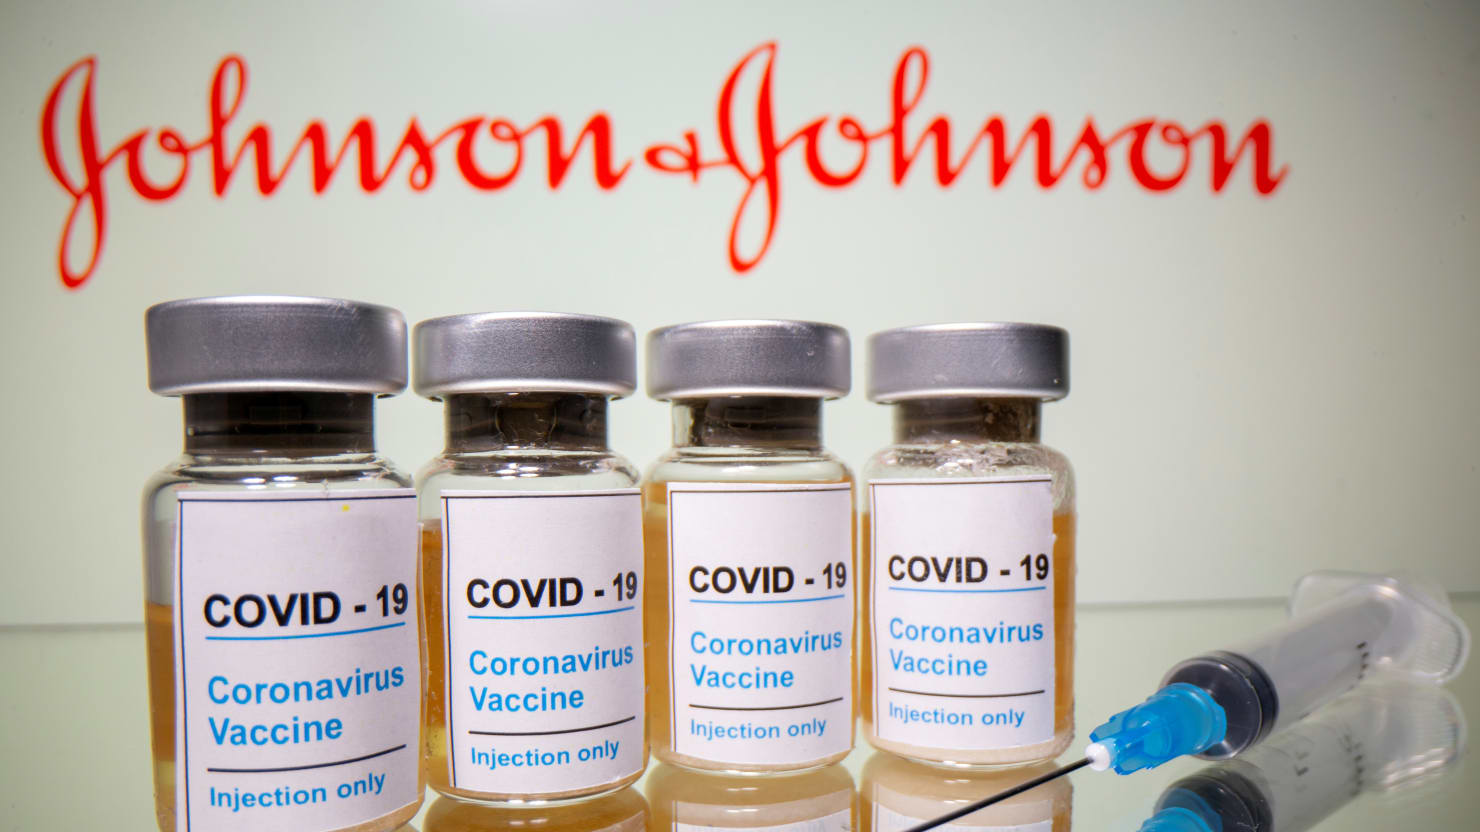 FDA grants emergency approval for Johnson & Johnson Coronavirus vaccine